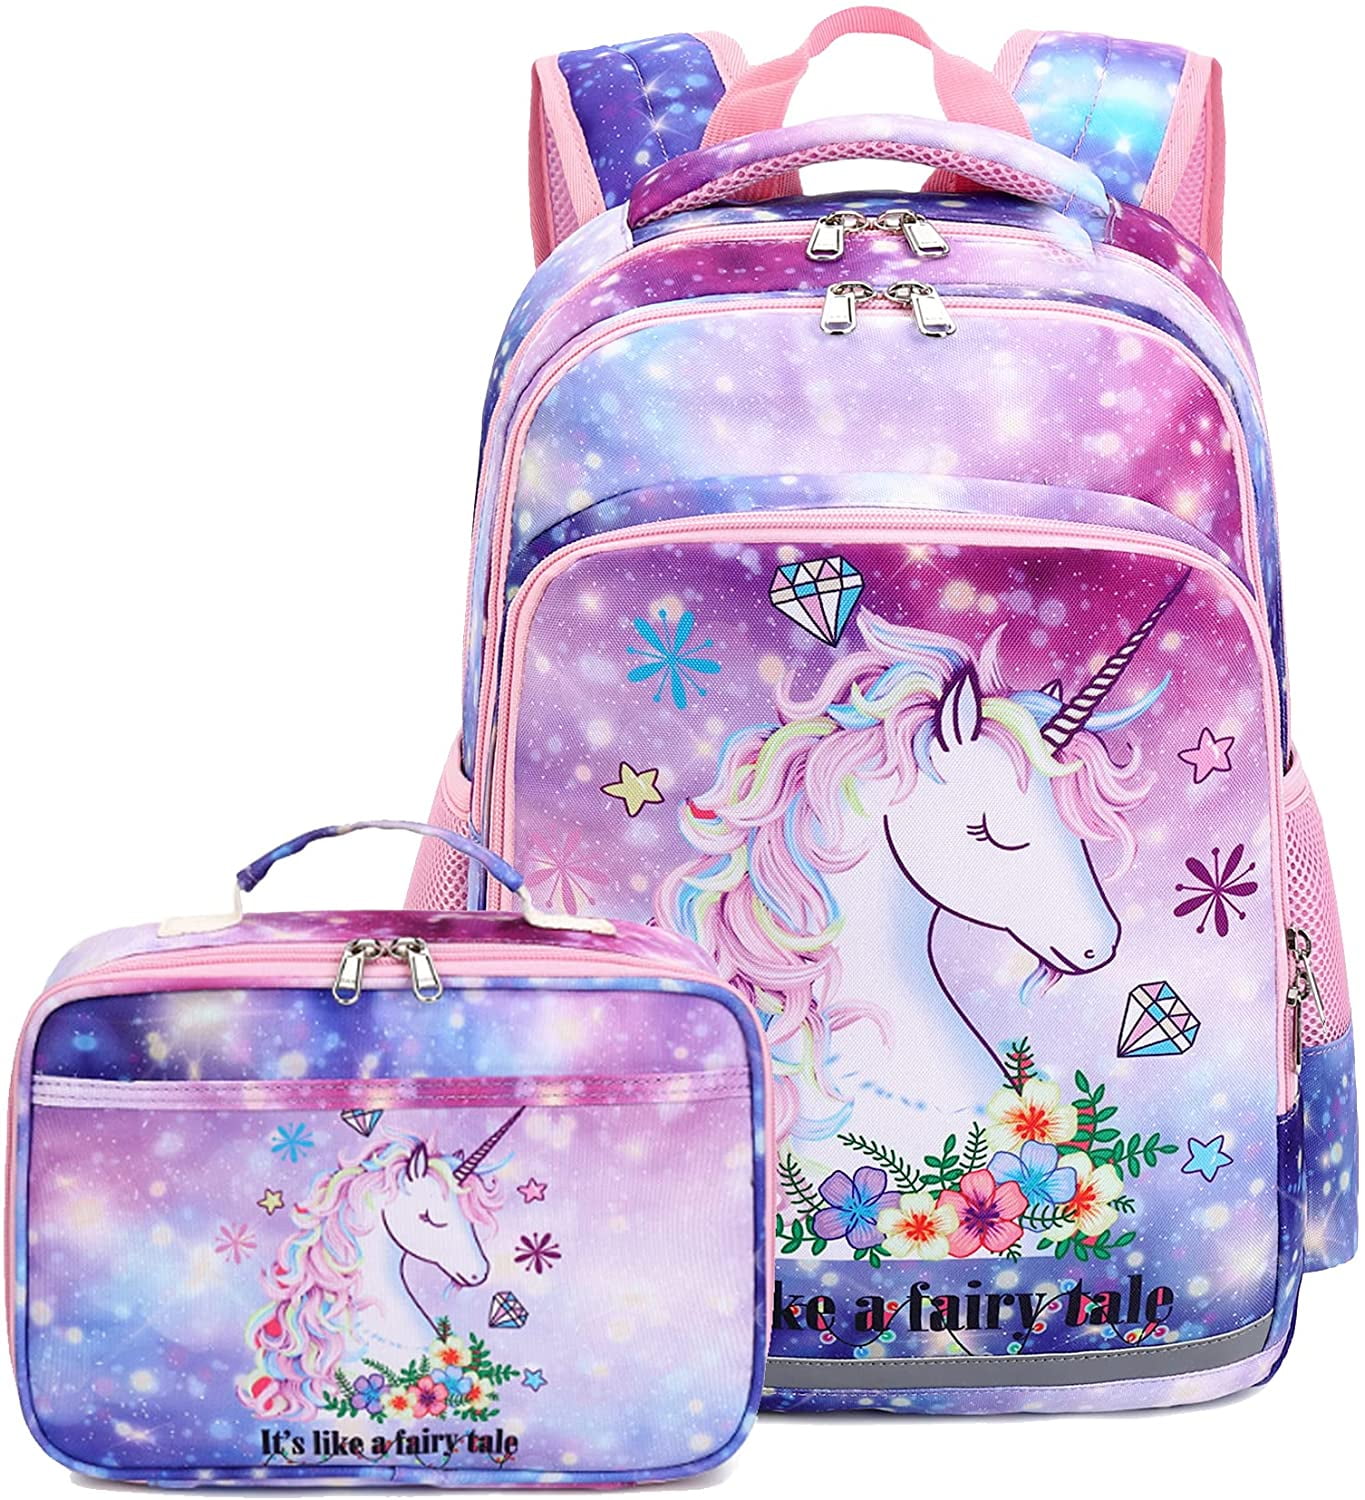 Disney Princess Large School Backpack Lunch Bag 2pc Set Black Pink Floral 